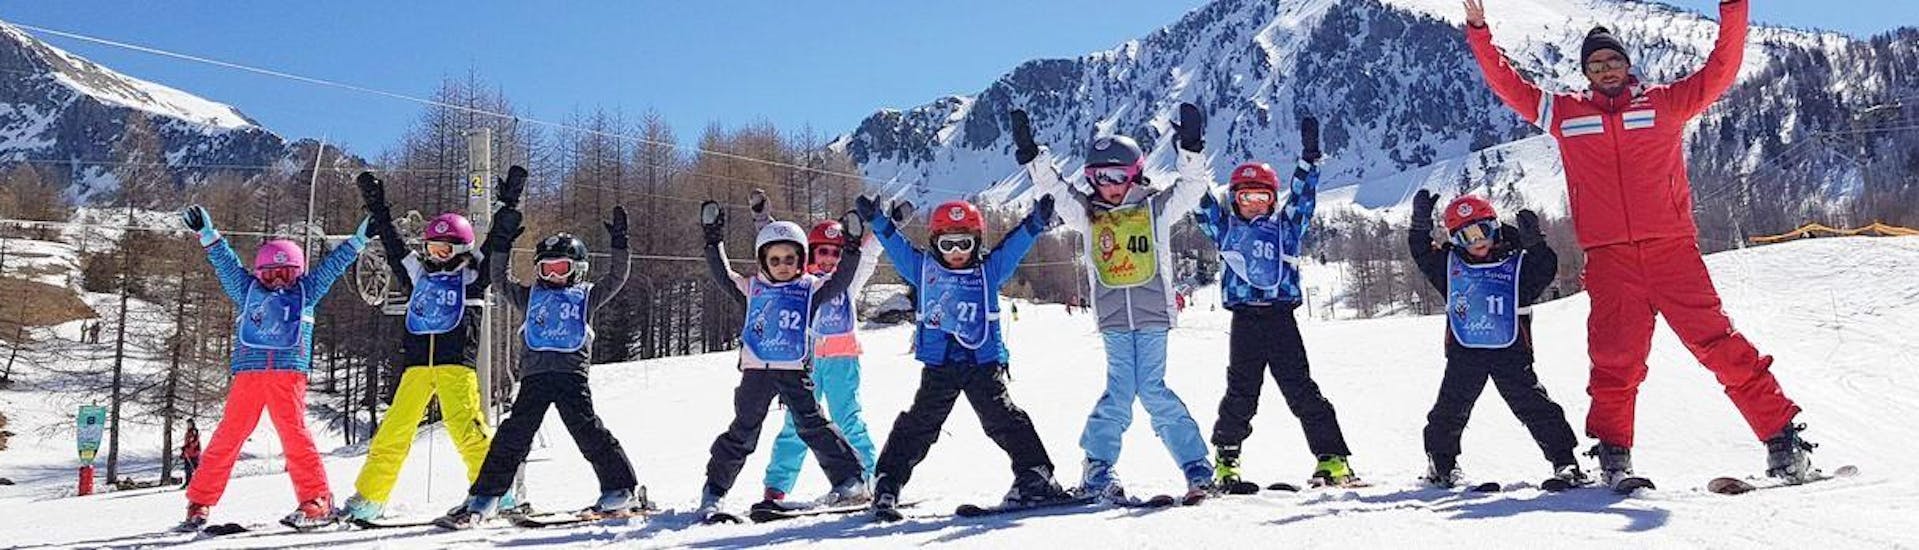 Skilessen voor kinderen vanaf 7 jaar voor alle niveaus.